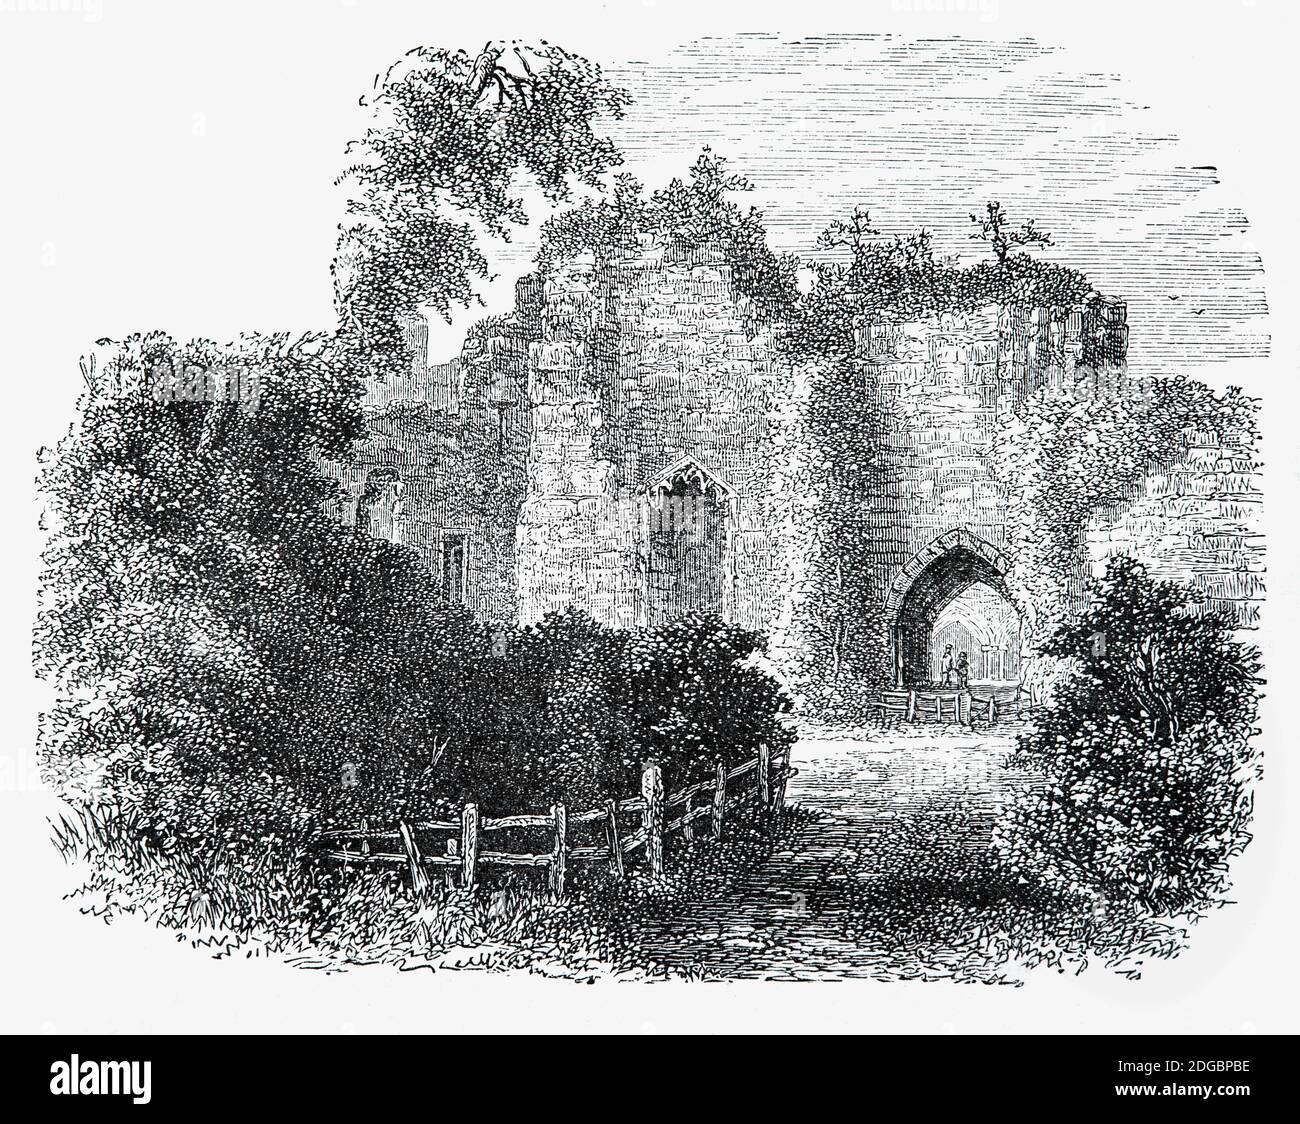 Eine Ansicht des 19. Jahrhunderts von Goodrich Castle, Herefordshire, England. Erbaut im 12. Jahrhundert mit einem Steinhügelbau, wurde es im späten 13. Jahrhundert erweitert, um luxuriöse Wohnräume mit umfangreichen Verteidigungseinrichtungen zu kombinieren. Im englischen Bürgerkrieg der 1640er Jahre wurde es zunächst von parlamentarischen und dann von Royalisten Truppen gehalten und schließlich 1646 von Oberst John Birch mit Hilfe des riesigen Mörsers "Roaring Meg" belagert, was zum anschließenden Abriss der Burg führte. Im 18. Jahrhundert wurde das Schloss zum Thema von Gemälden und Gedichten und gab Wordswords "Wir sind Sieben" Inspiration. Stockfoto